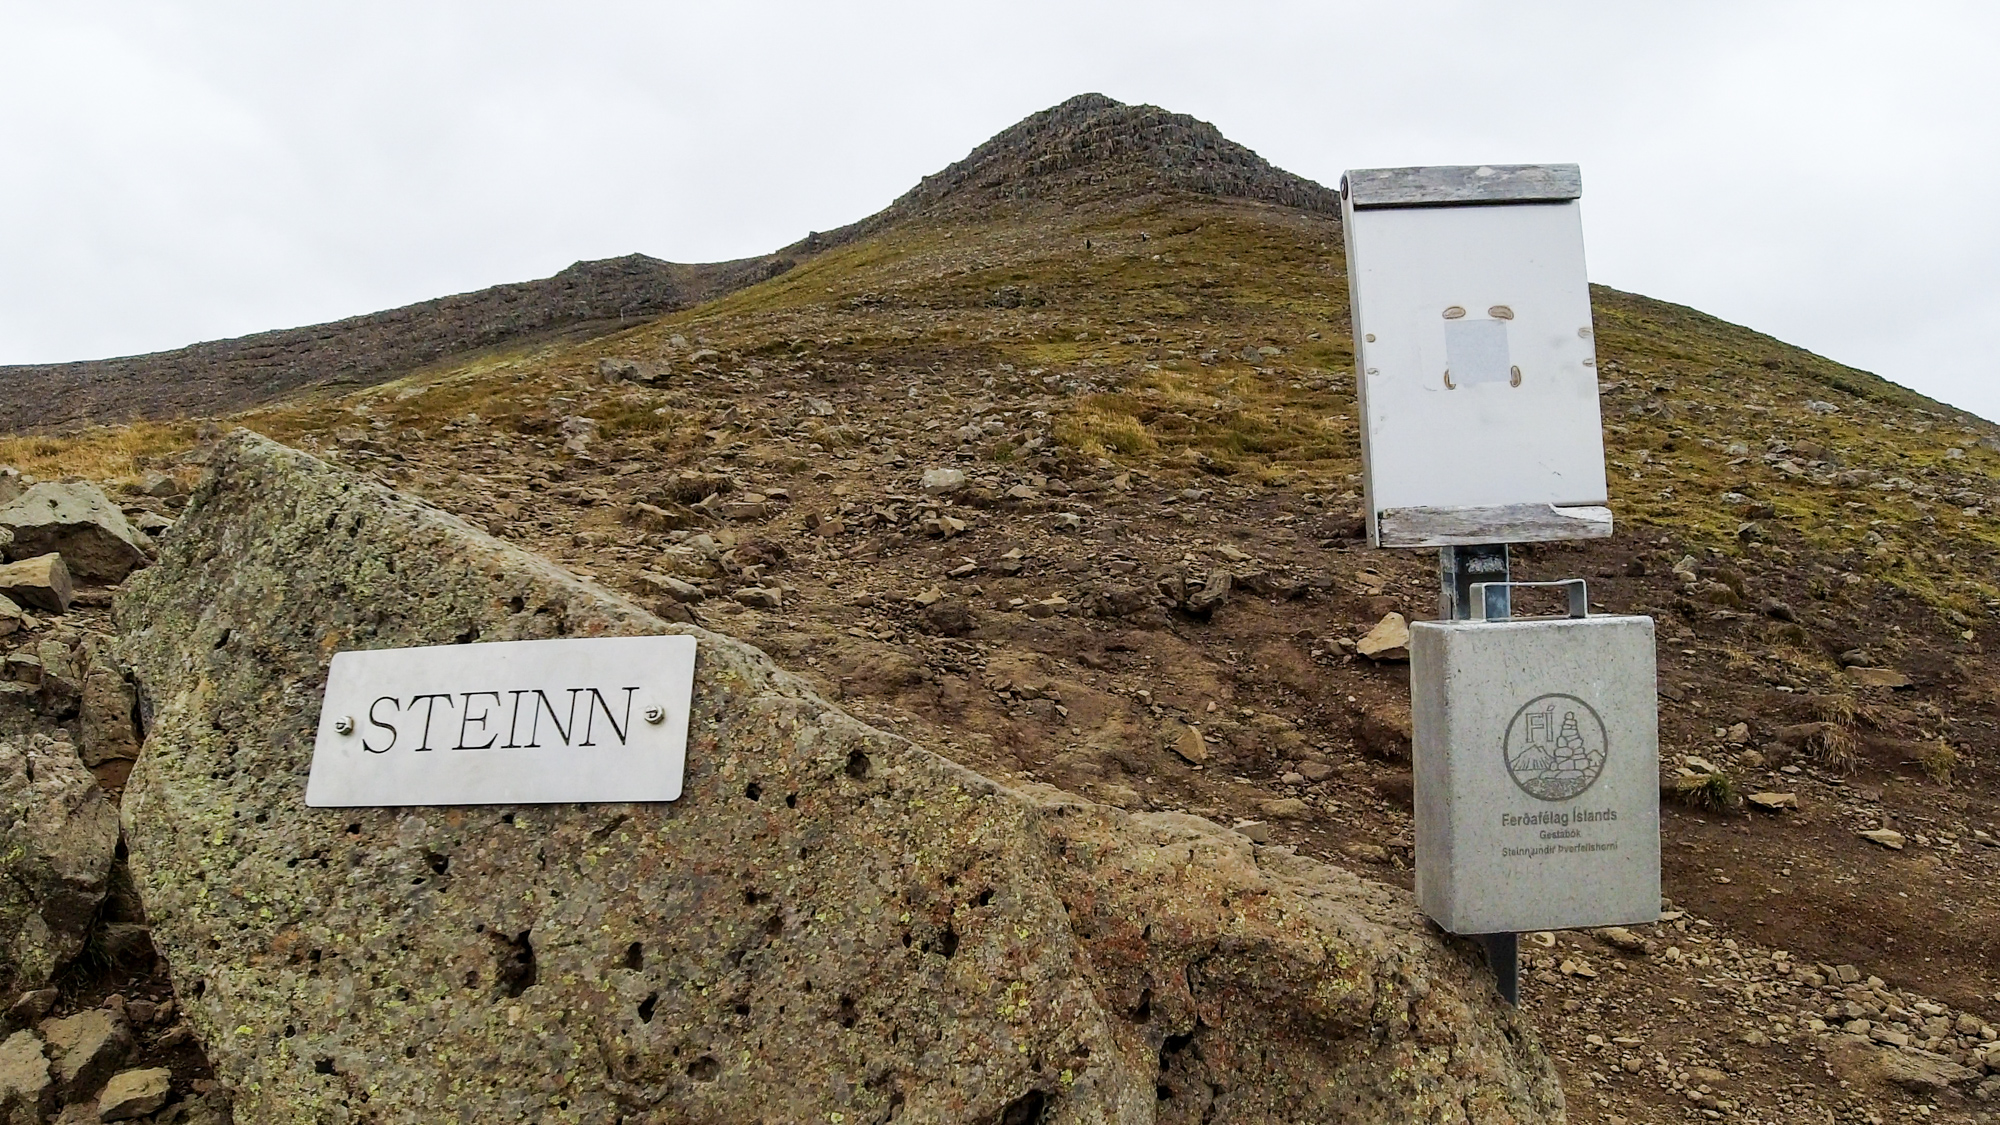 Obe cesty sa spoja pod vrcholom na mieste Steinn, čo znamená skala.